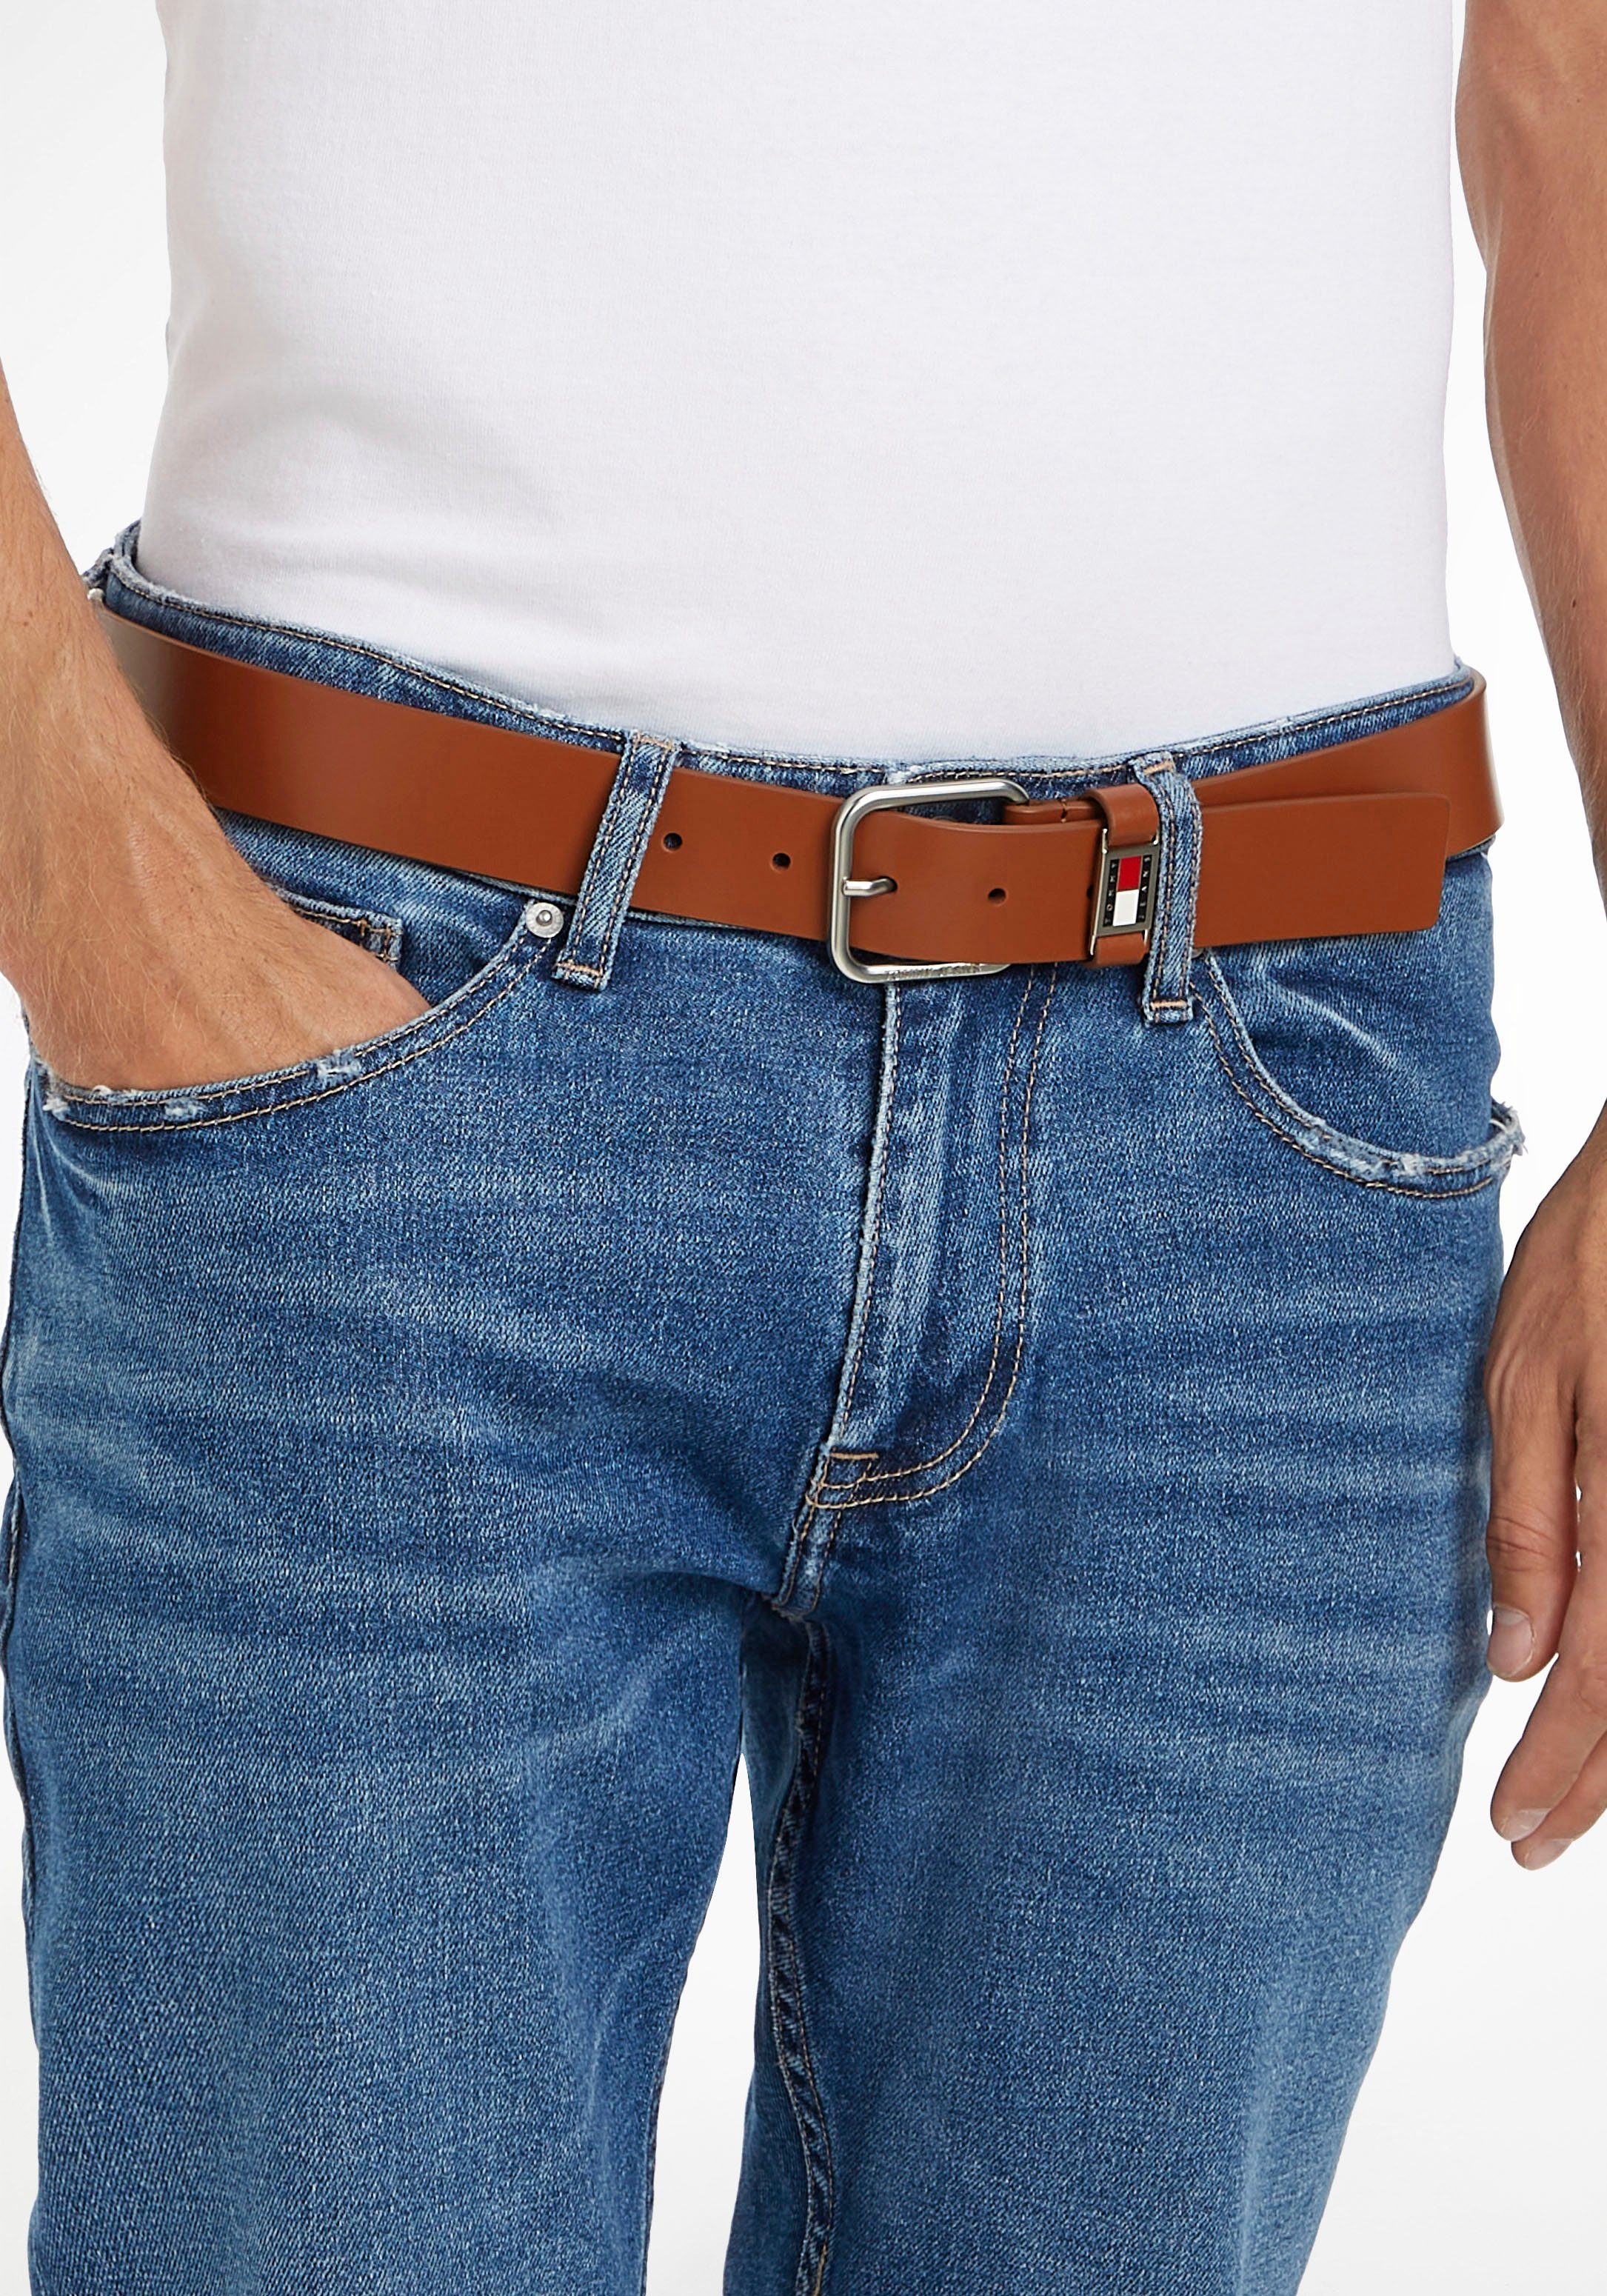 Jeans braun Tommy Jeans schlichter Ledergürtel und Metallschnalle mit Logoschlaufe Tommy